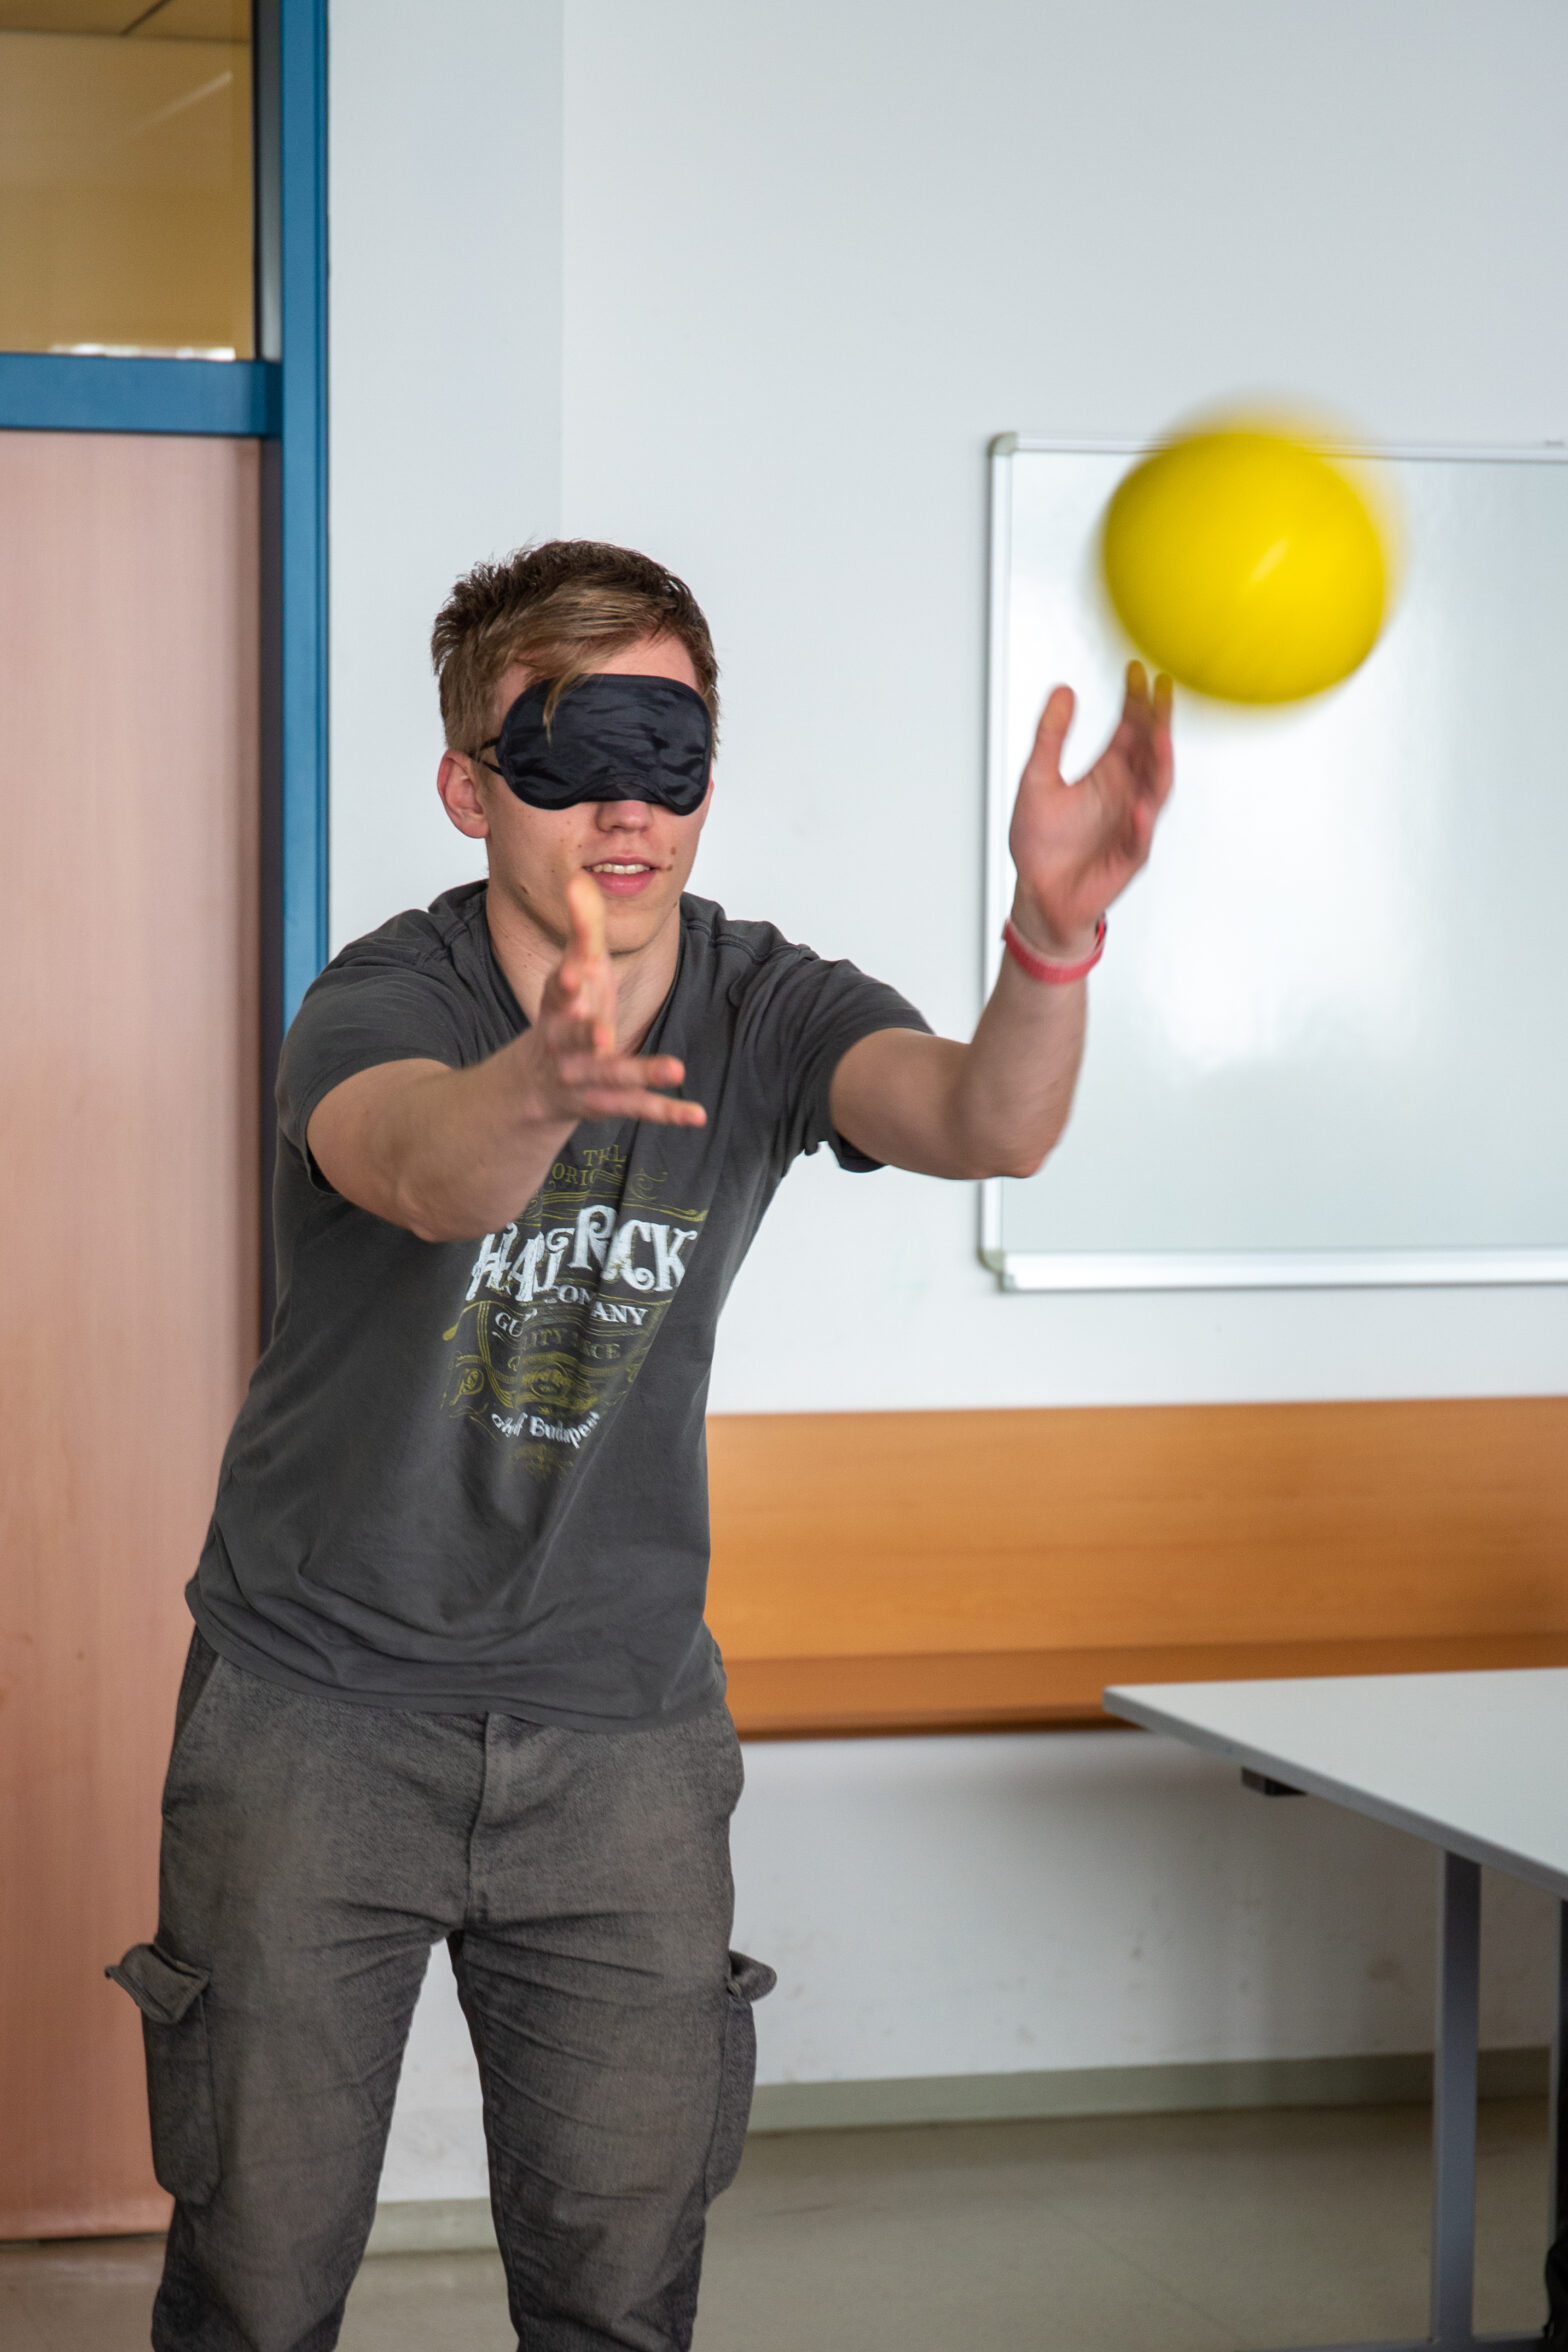 Uczeń niedowidzący próbuje złapać rzuconą piłkę z zasłoniętymi oczami